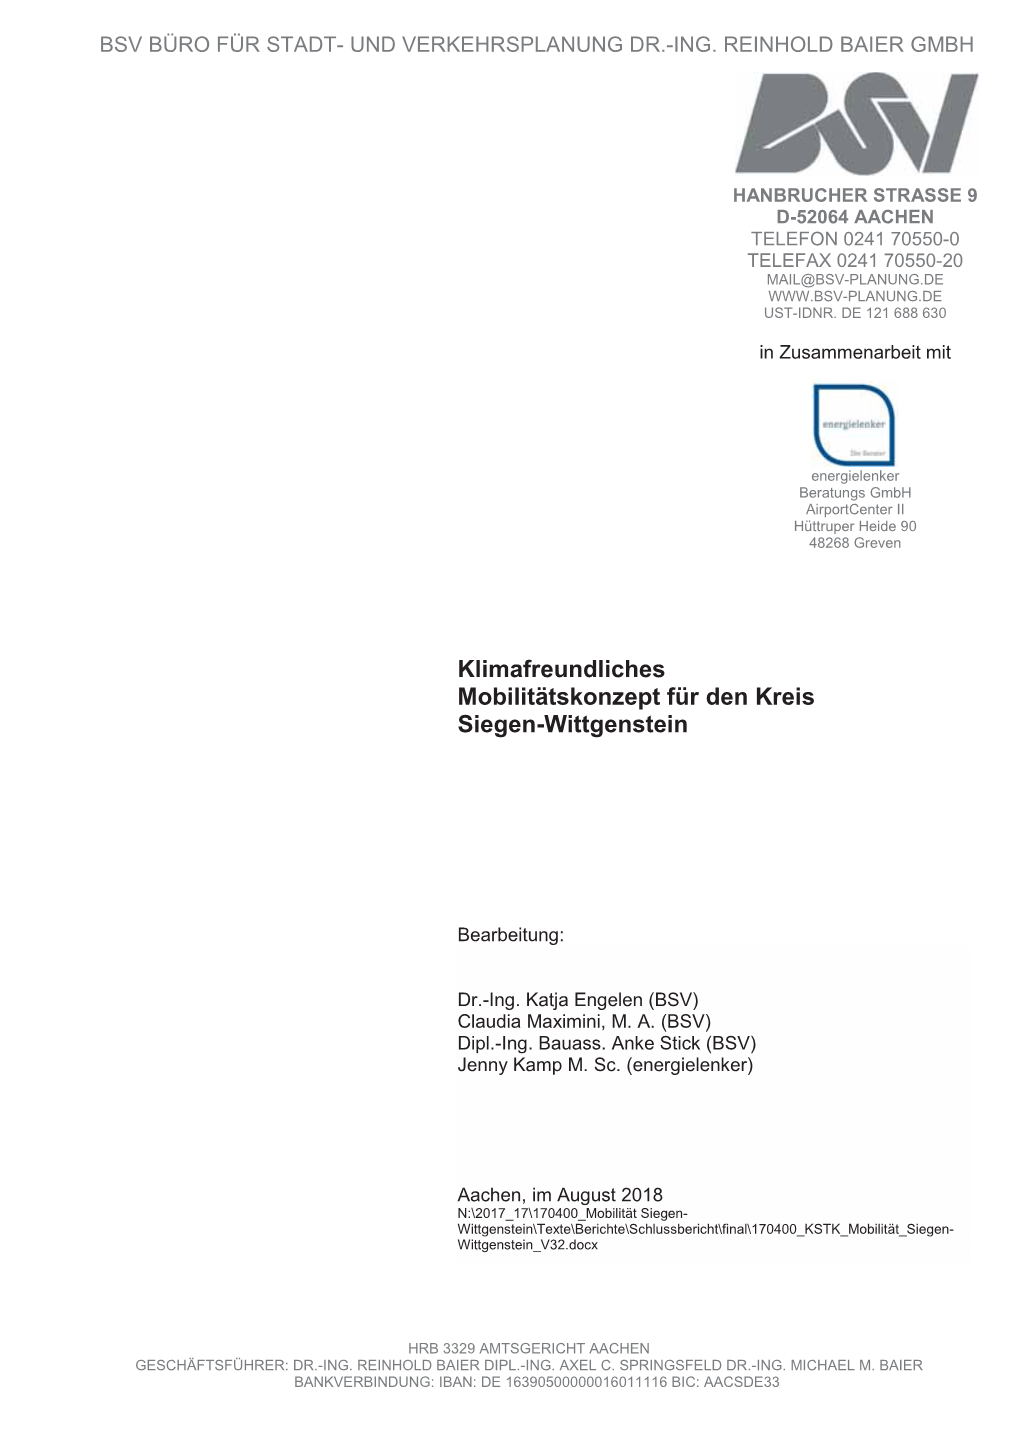 Klimafreundliches Mobilitätskonzept, Kreis Siegen-Wittgenstein 1